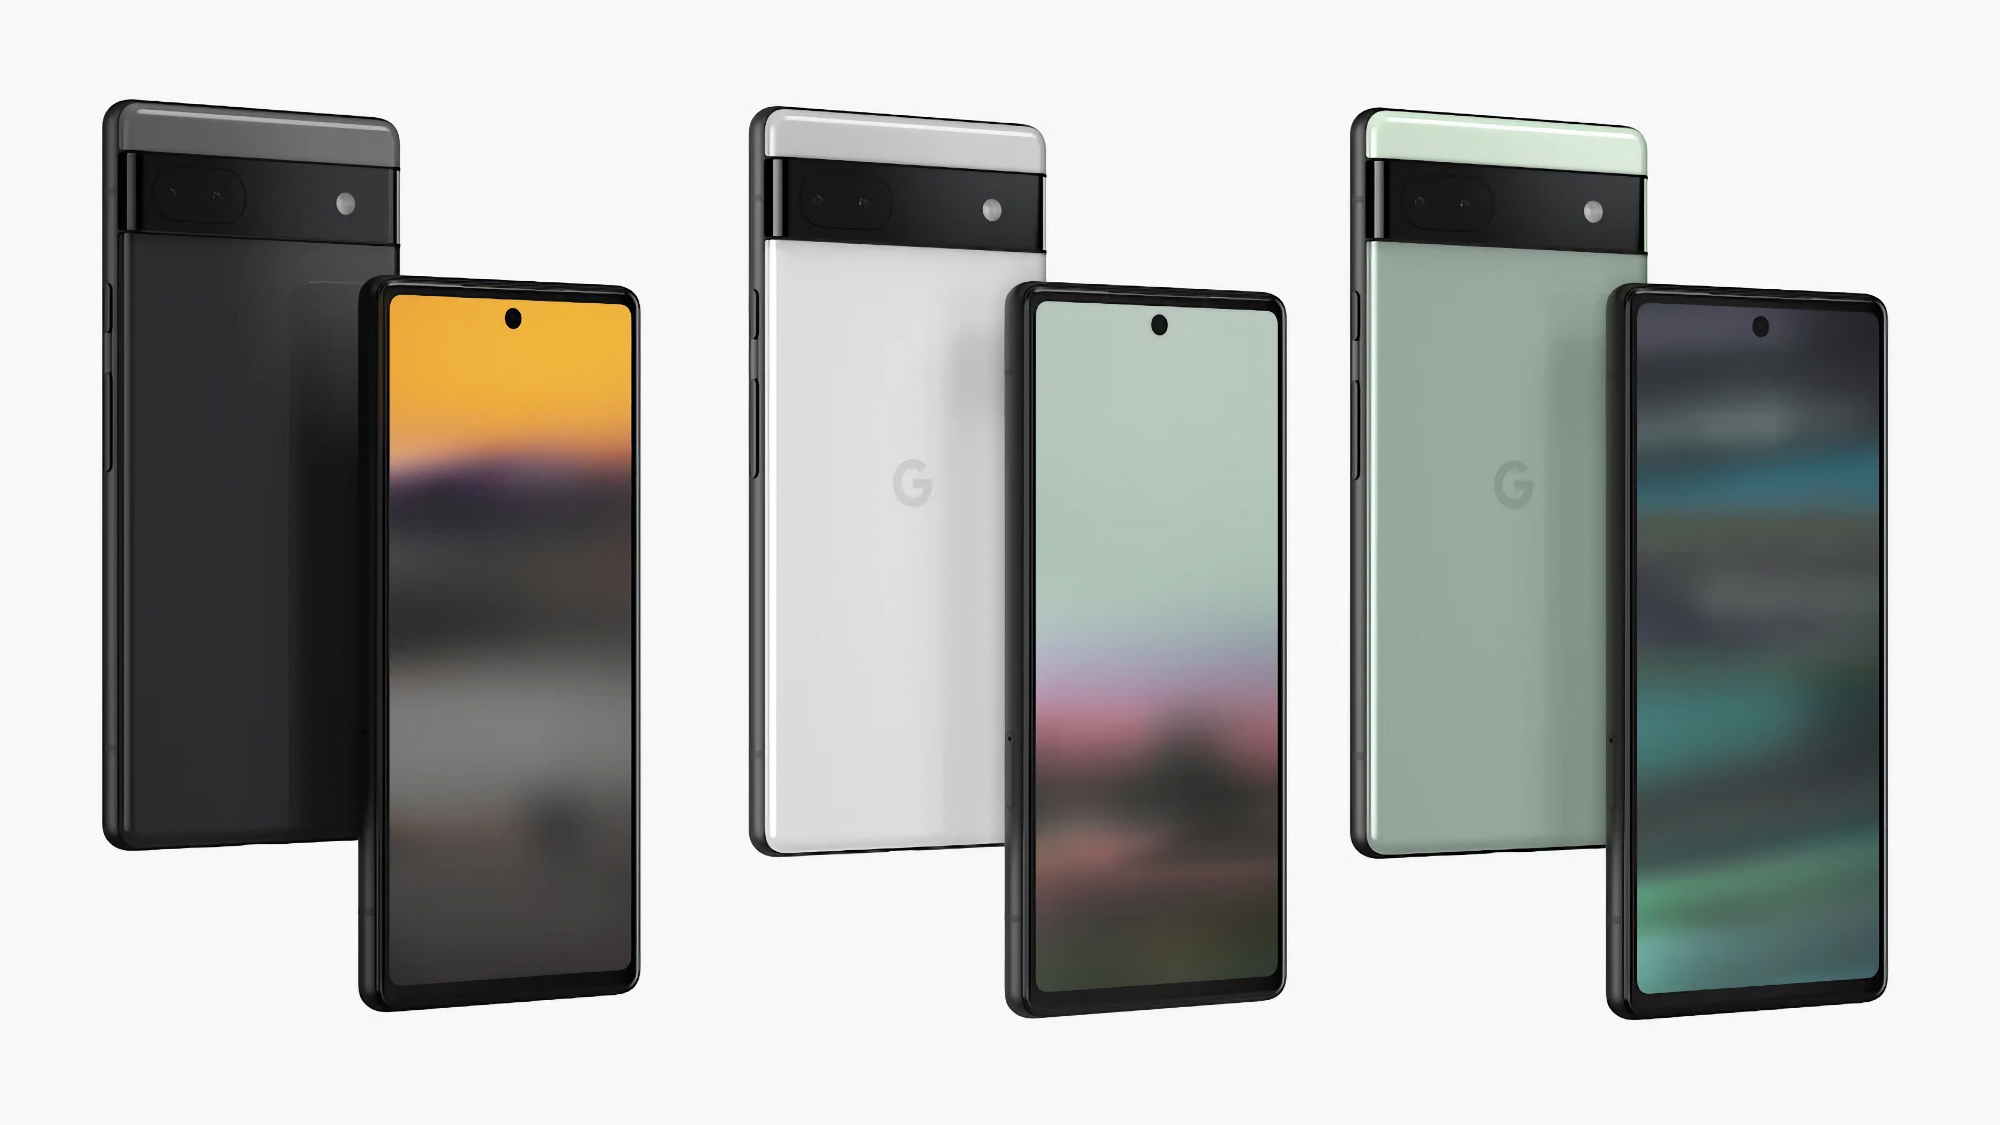 Le prix du Google Pixel 6a a encore baissé : le smartphone peut être acheté sur Amazon pour 300 dollars (150 dollars de réduction).